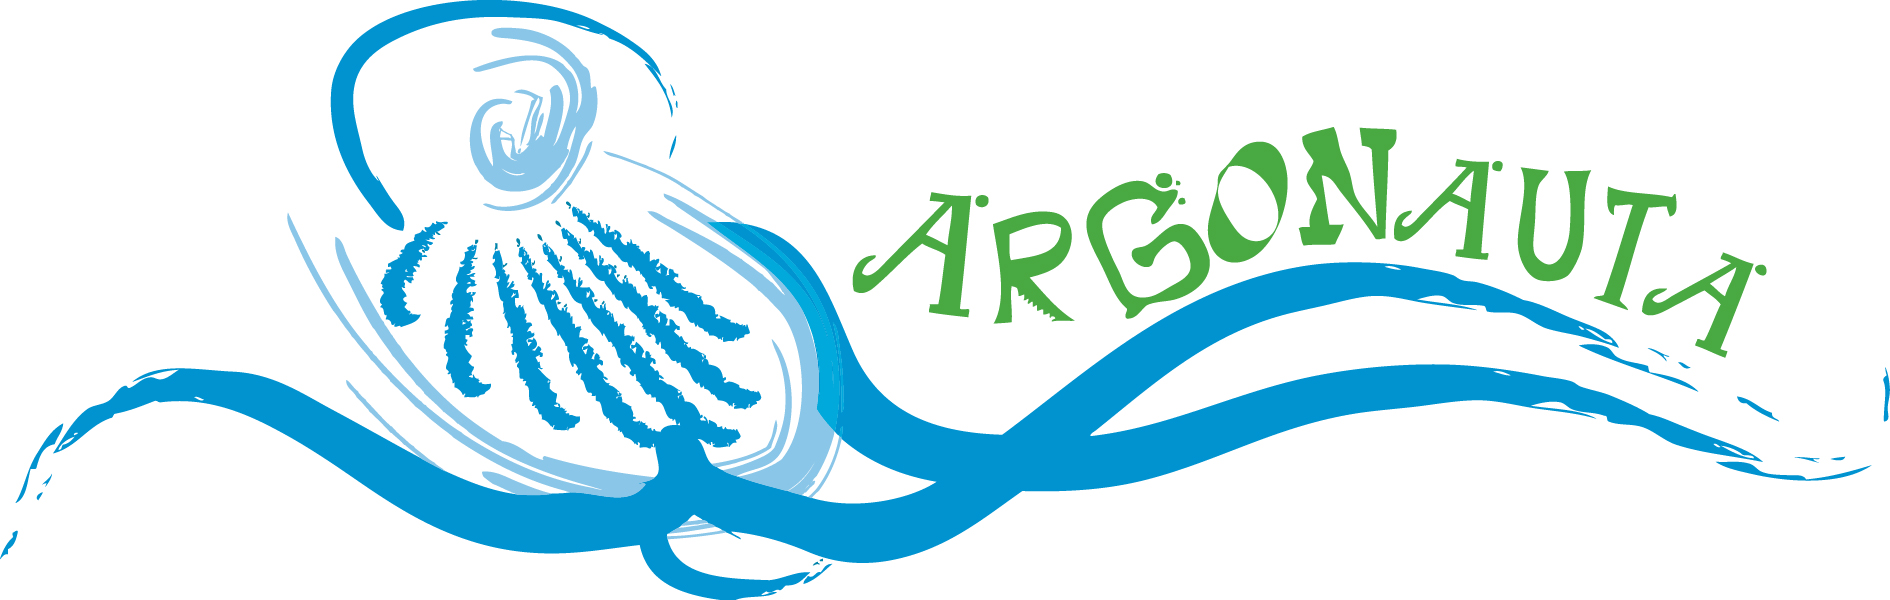 Argonauta logotip